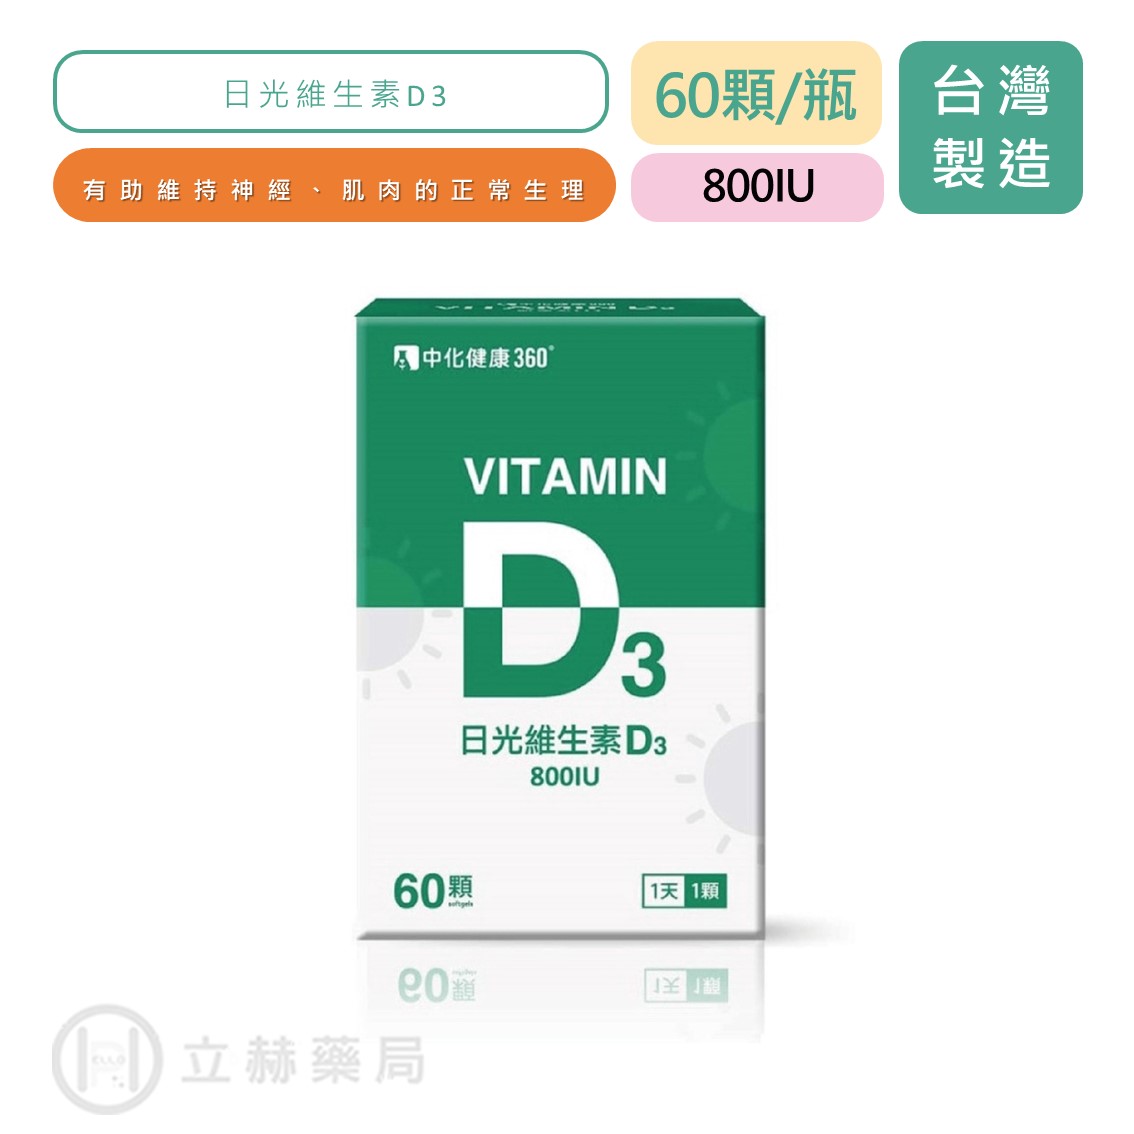 【中化健康360】 日光維生素D3 60顆/瓶 Vitamin D3 800IU 維生素D3 D3 立赫藥局